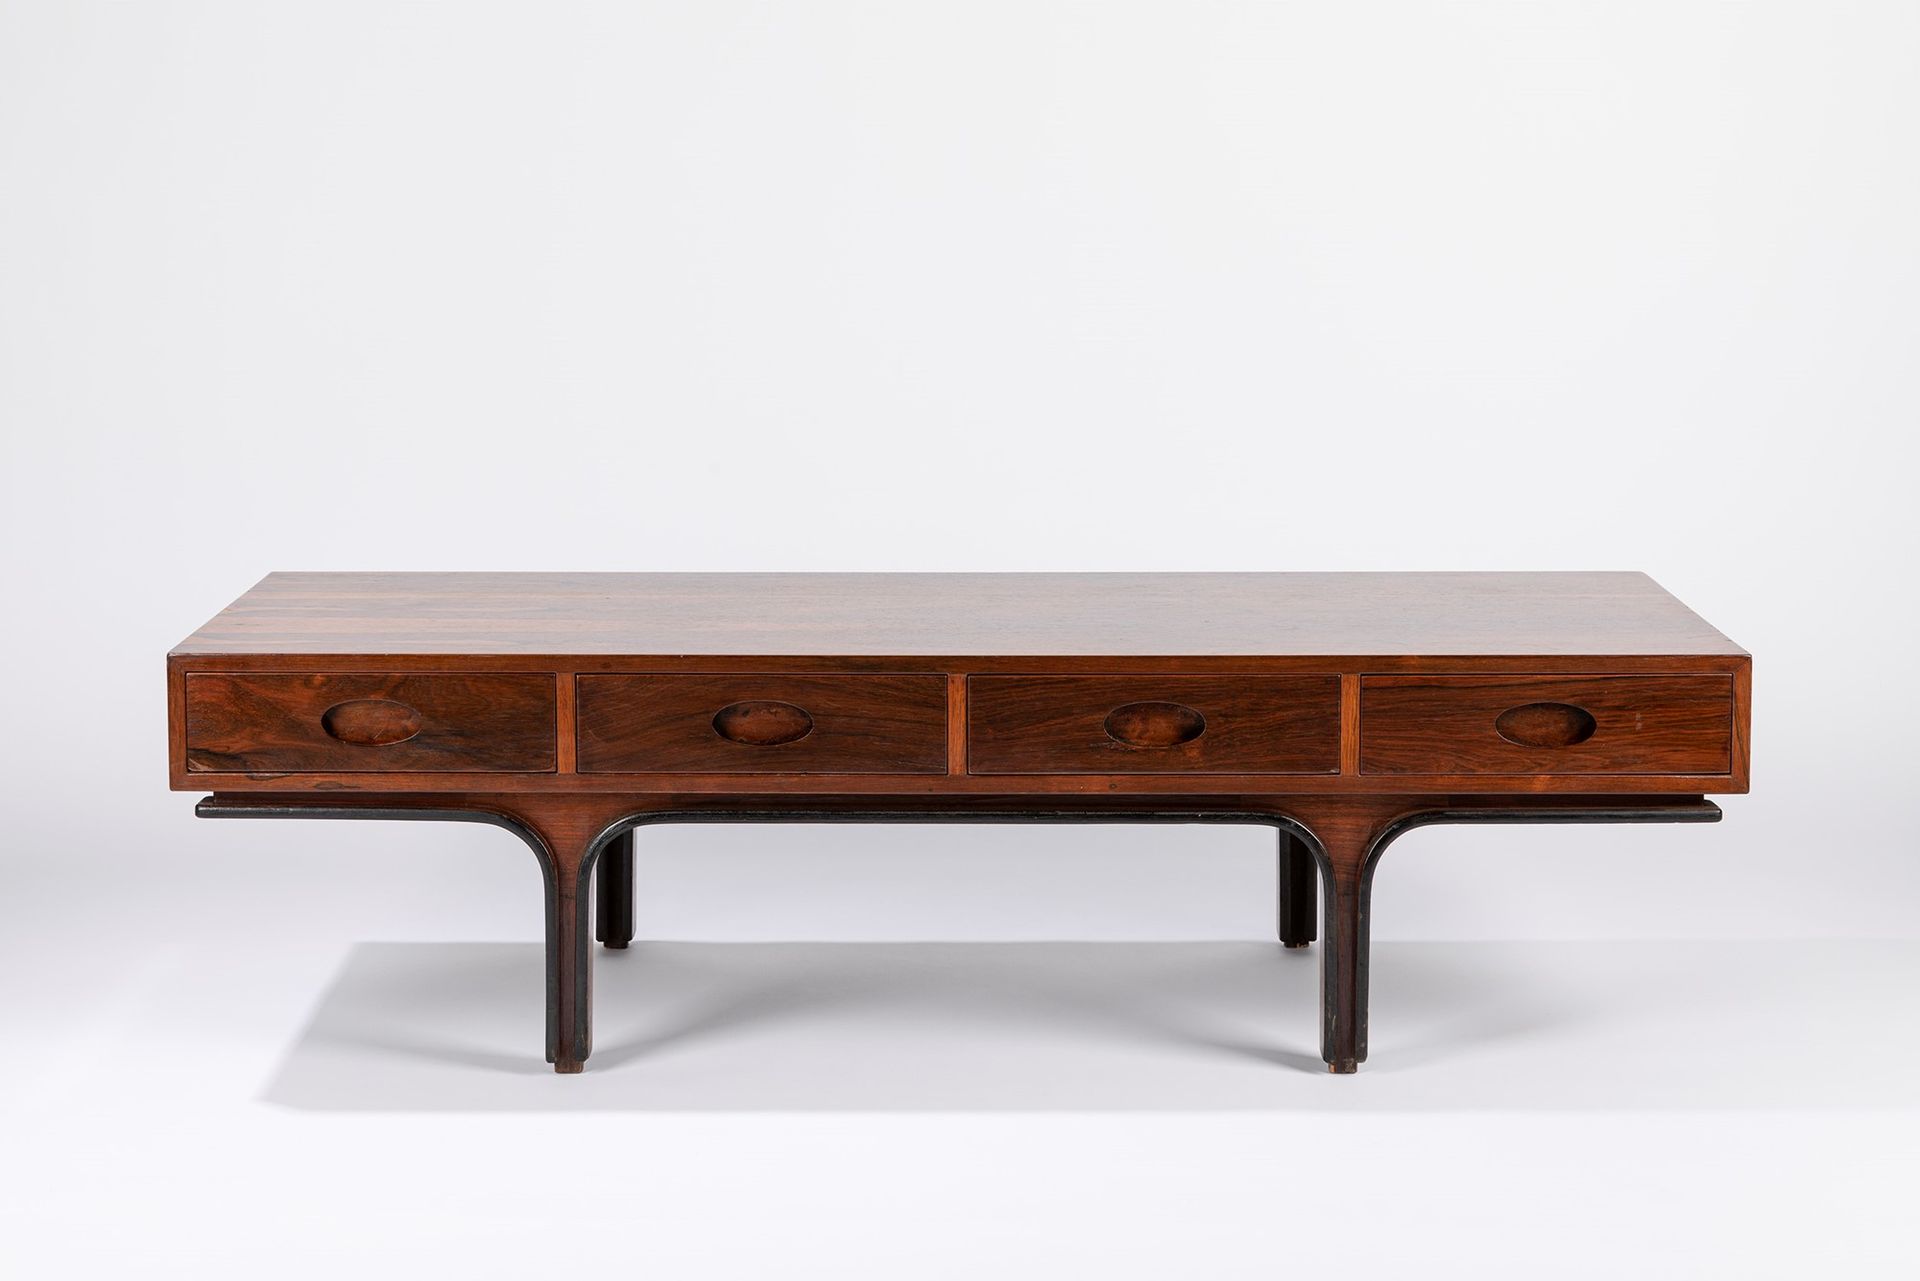 GIANFRANCO FRATTINI 咖啡桌，1960年约

h 39 x 140 x 53 cm
木头和四个抽屉。

贝尔尼尼制造。